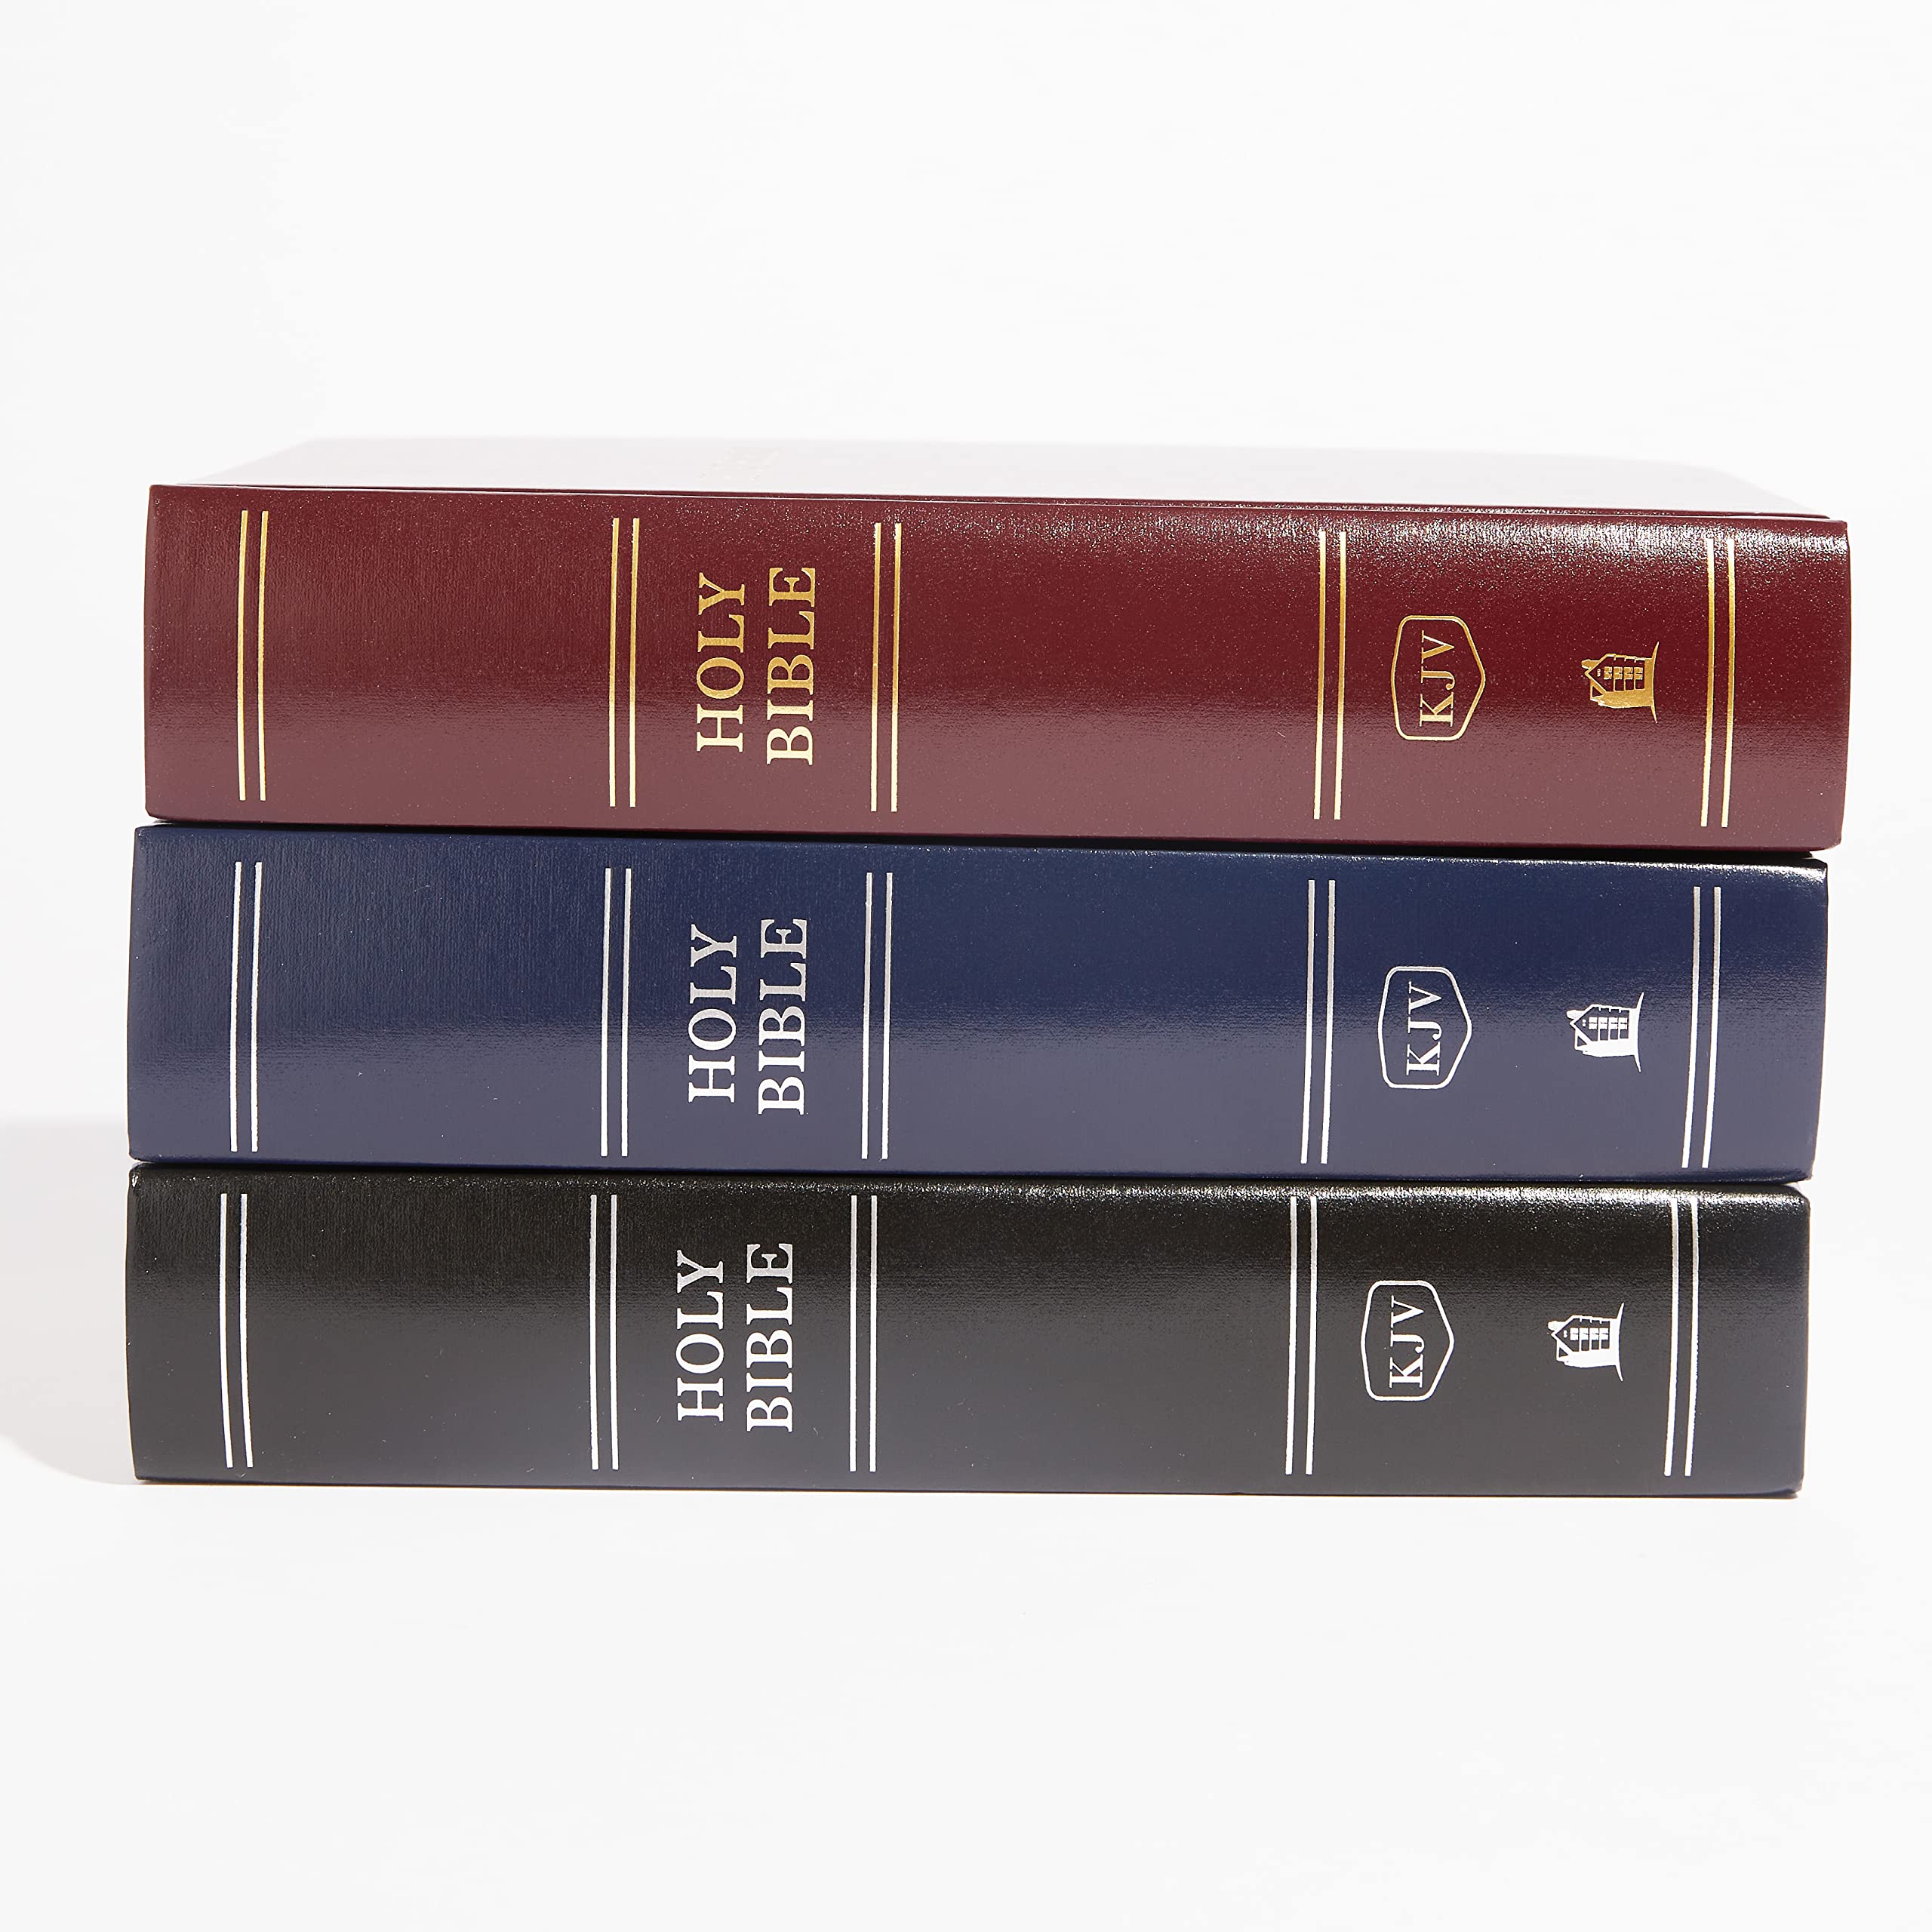 KJV, Pew Bible, Large Print, Hardcover, Blue, Red Letter, Comfort Print: Holy Bible, King James Version